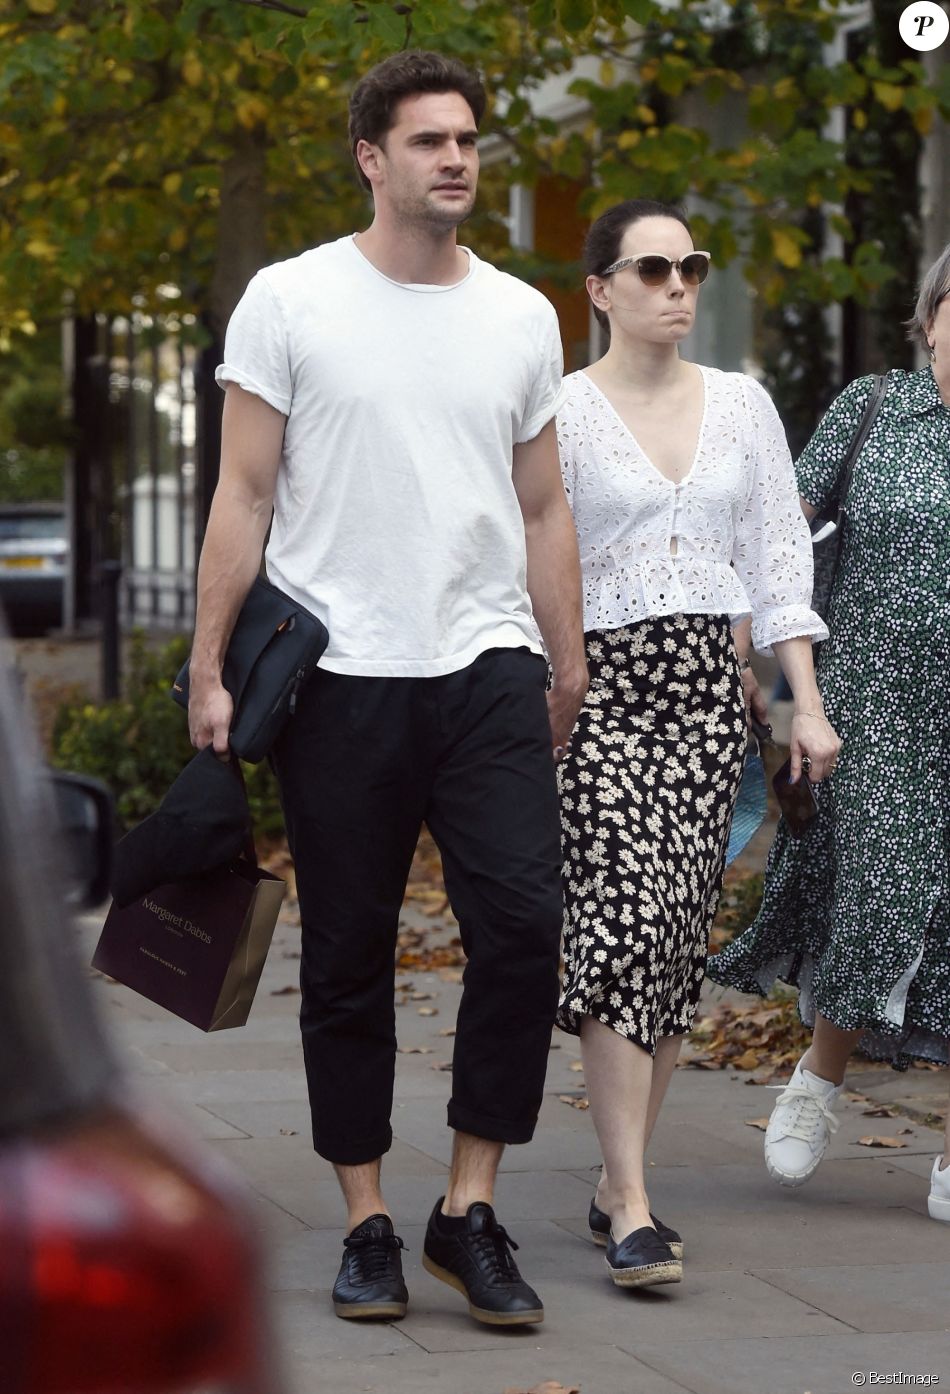 Exclusif - Daisy Ridley (Star Wars) est allée déjeuner chez sa mère Louise Fawkner-Corbett avec son fiancé Tom Bateman dans le quartier de Notting Hill à Londres, le 22 septembre 2020   